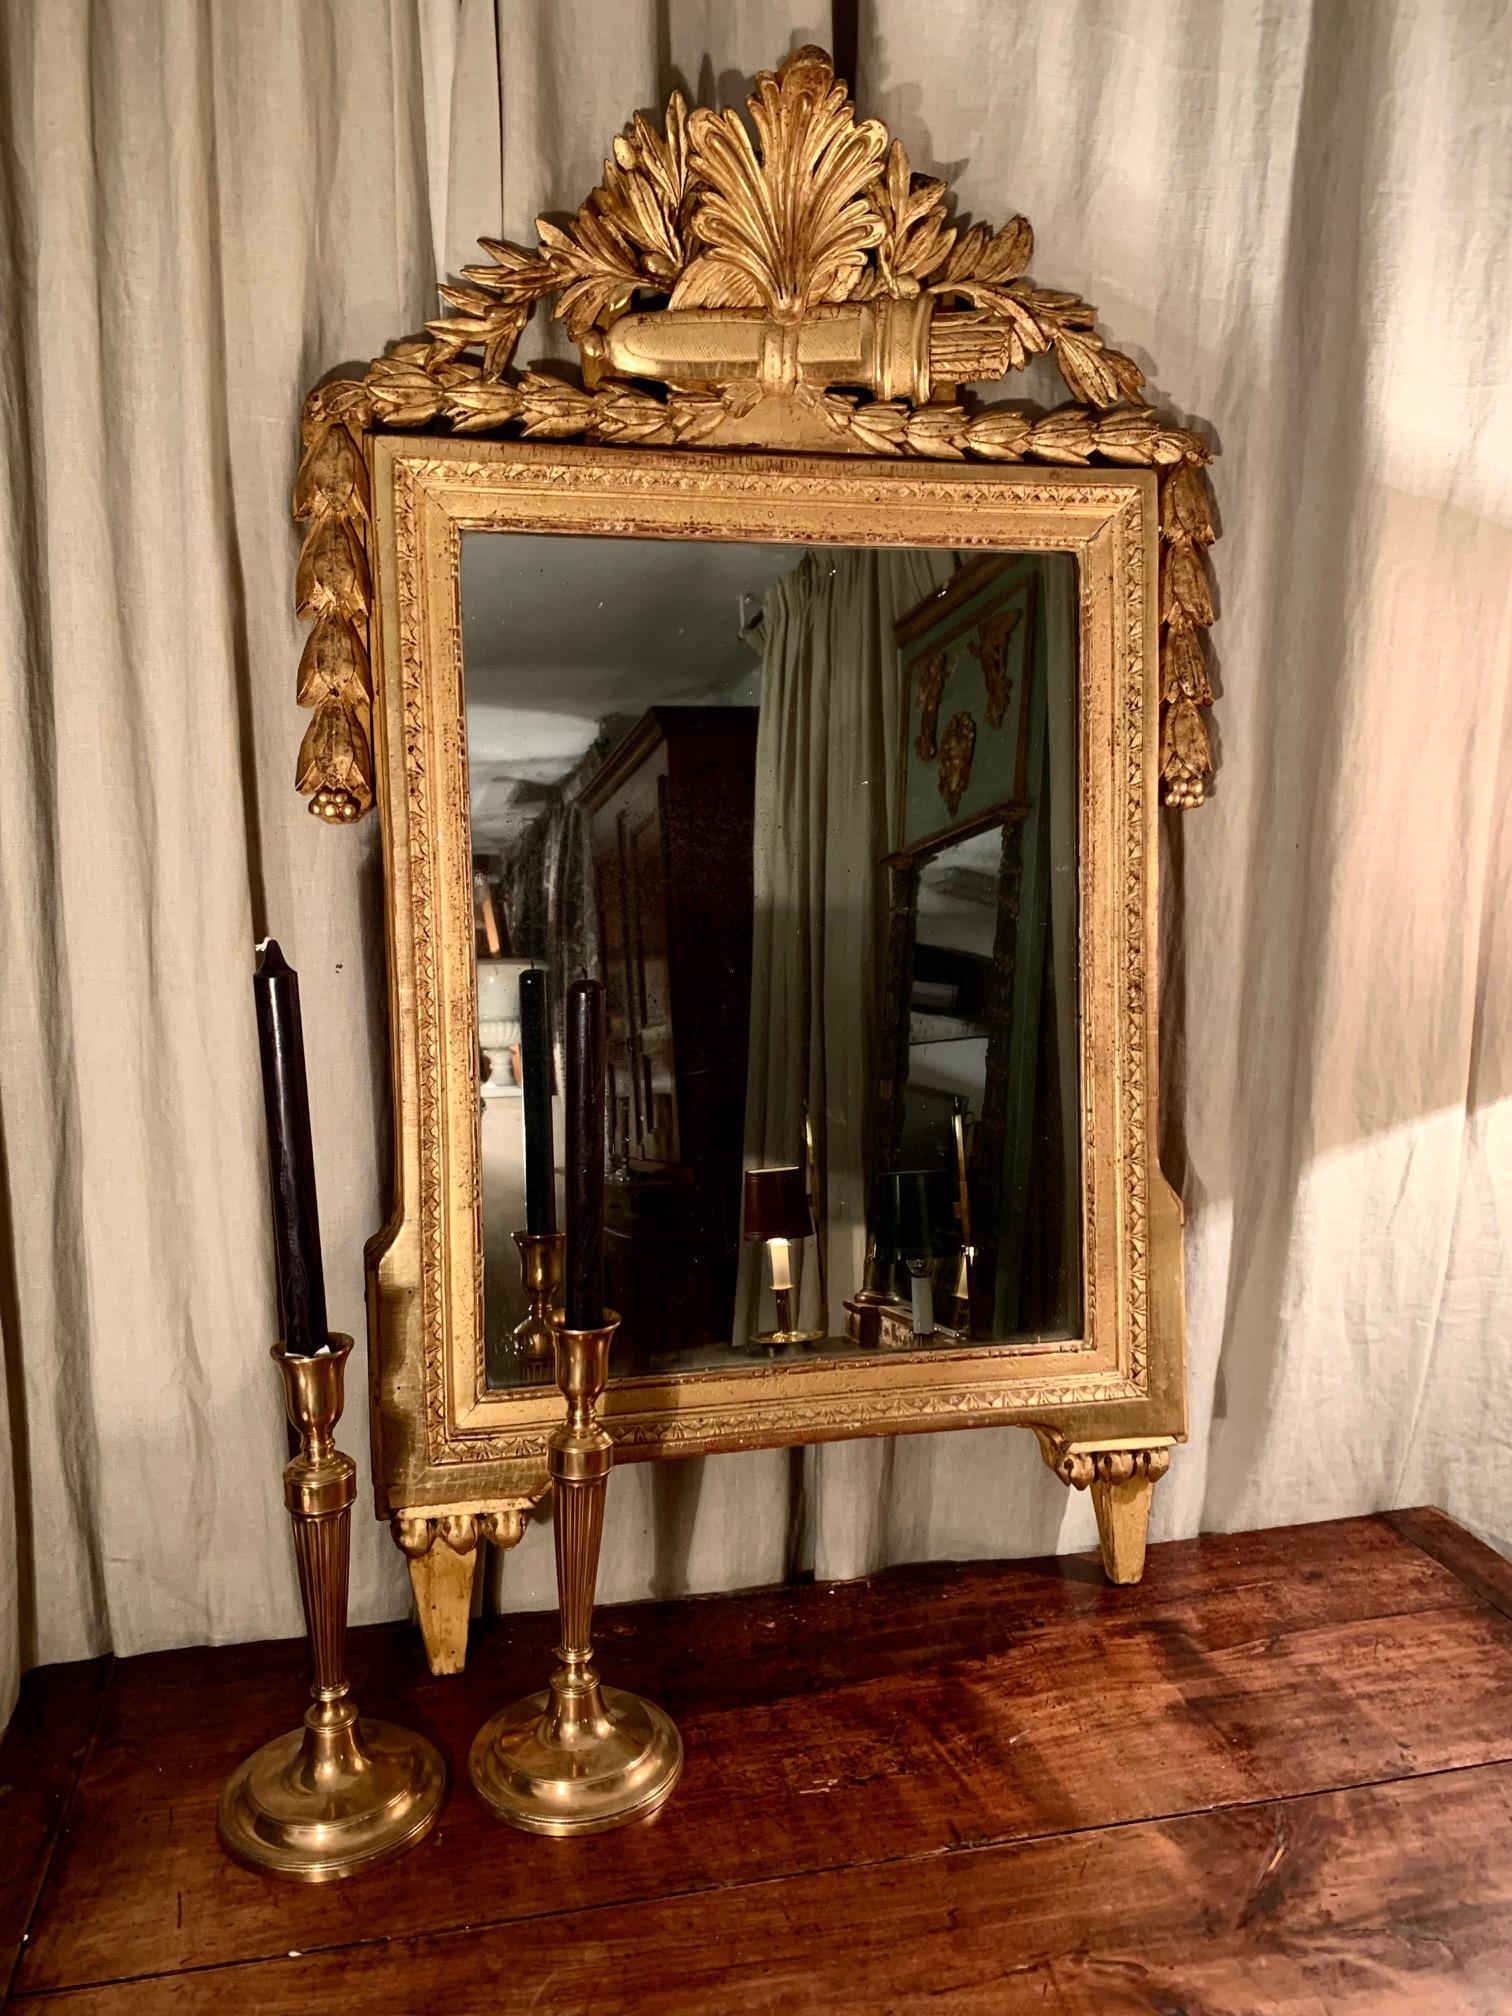 Miroir de France, sculpté à la main en bois doré, de l'époque ou du Directoire LouisXVI, dans la partie supérieure sculpté en forme de coquillage végétal et juste en dessous une sculpture de flèches dans son étui, qui symbolise peut-être les arts,